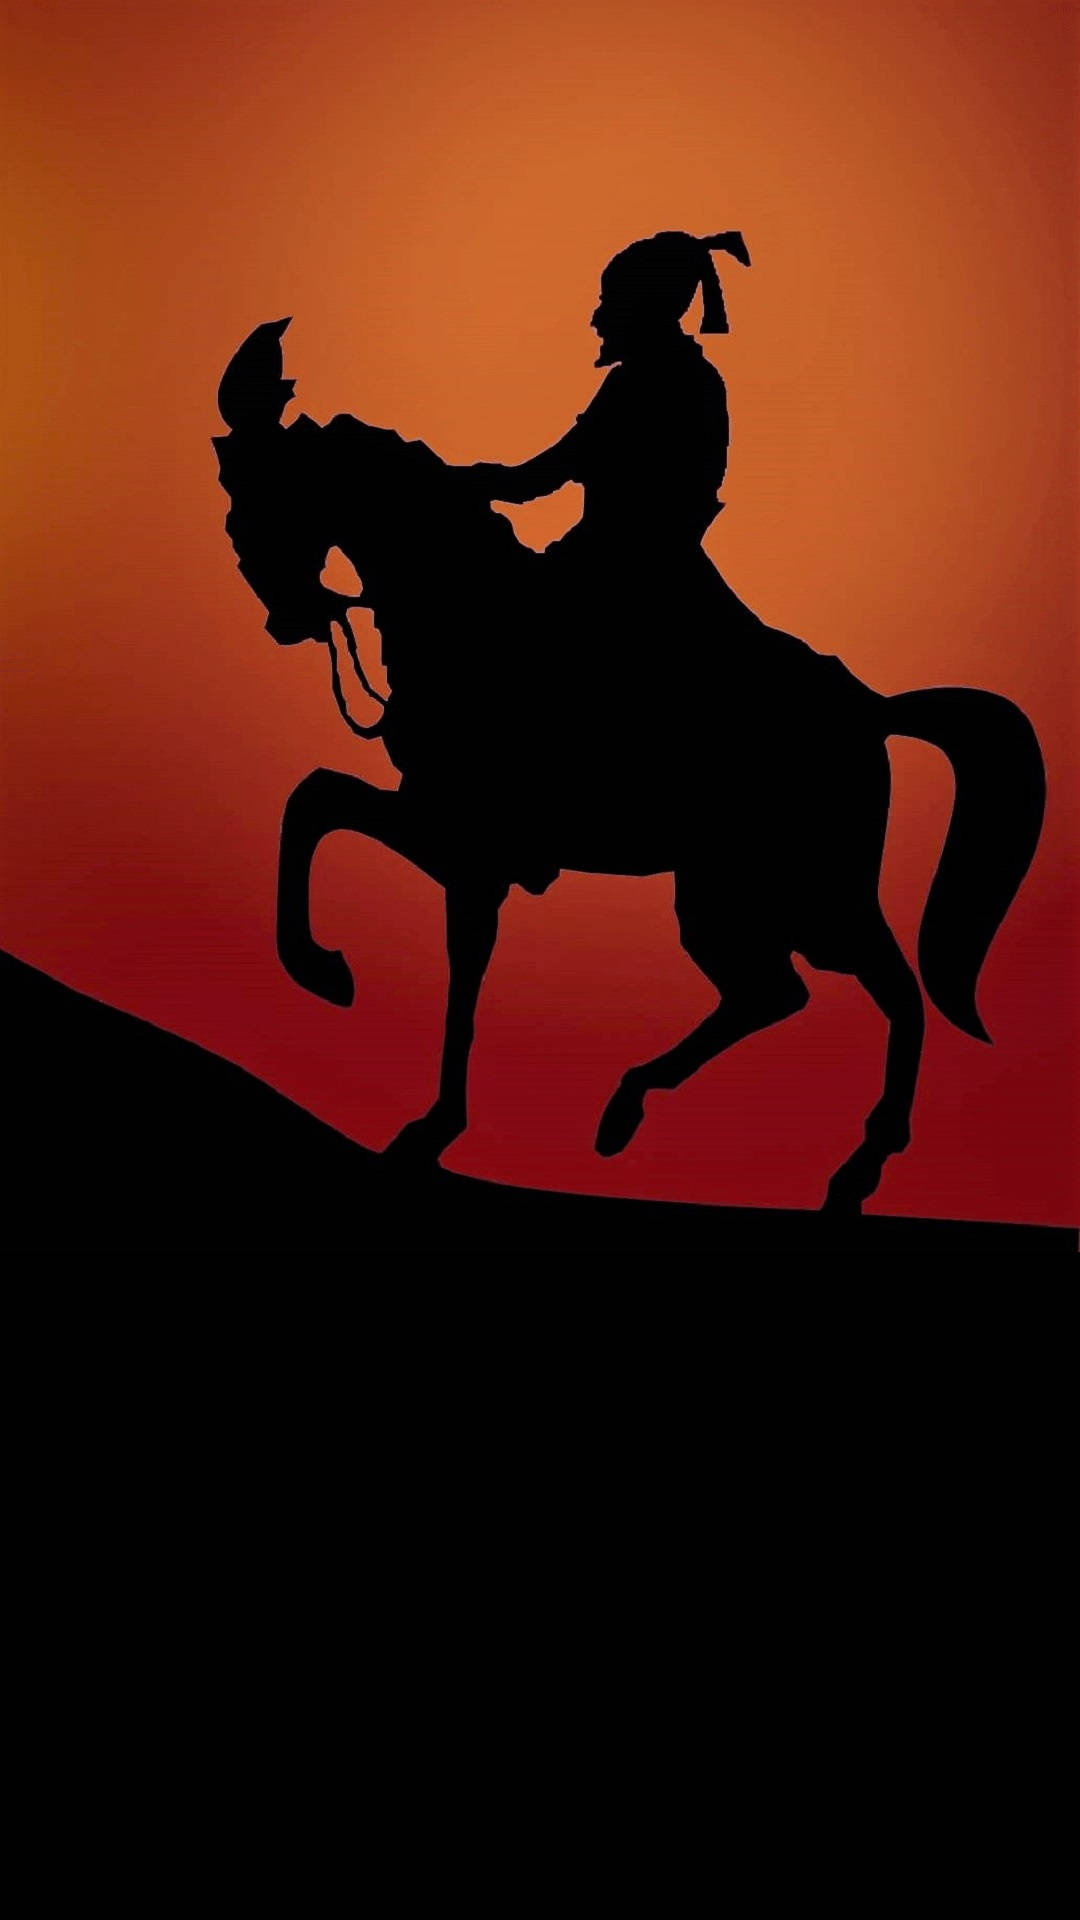 Shivaji Maharaj Riding Horse Uphill Hd Background